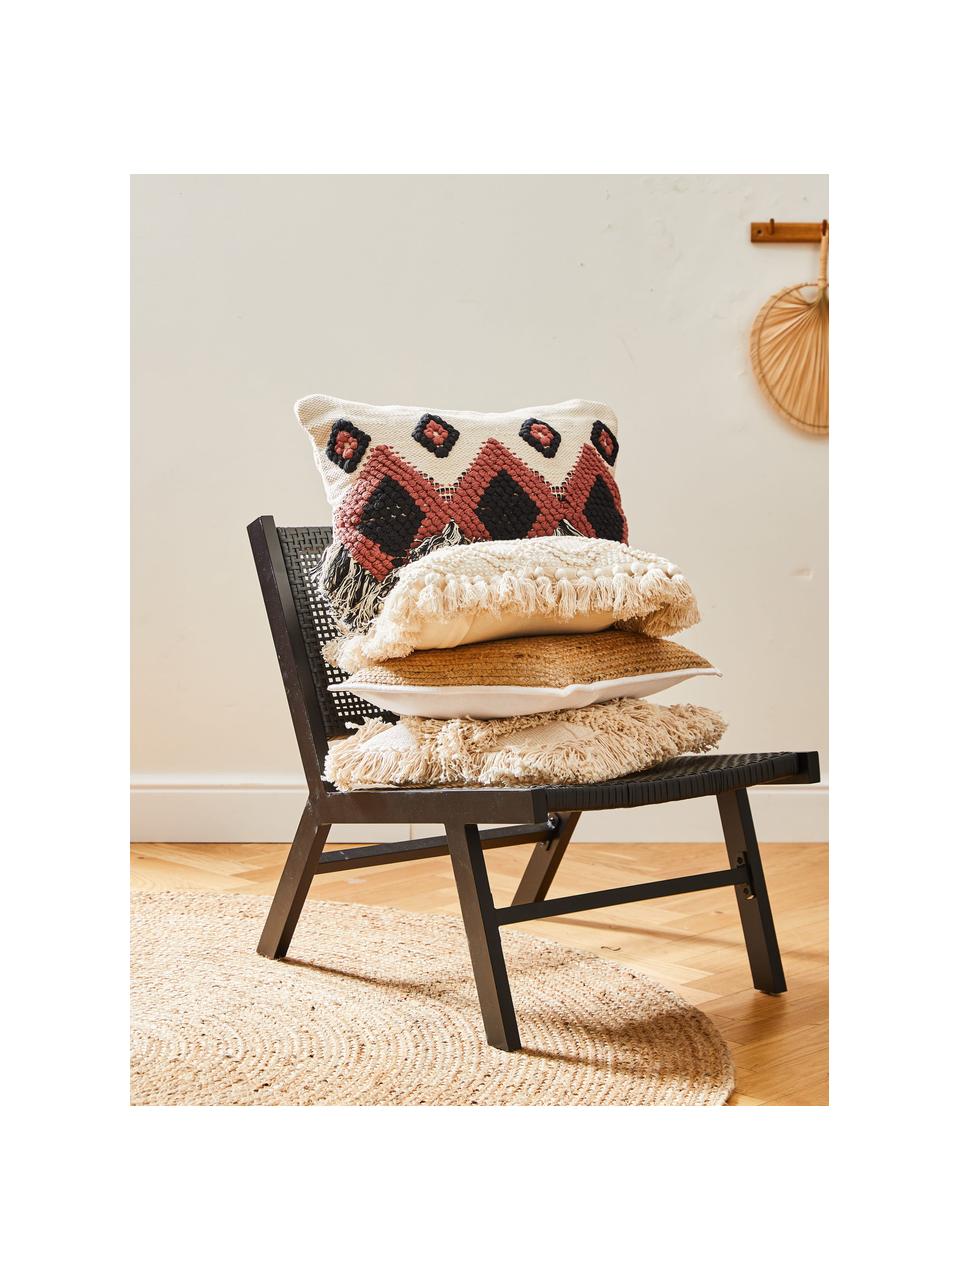 Poszewka na poduszkę Tanea, 100% bawełna, Ecru, czarny, rudy, S 40 x D 60 cm